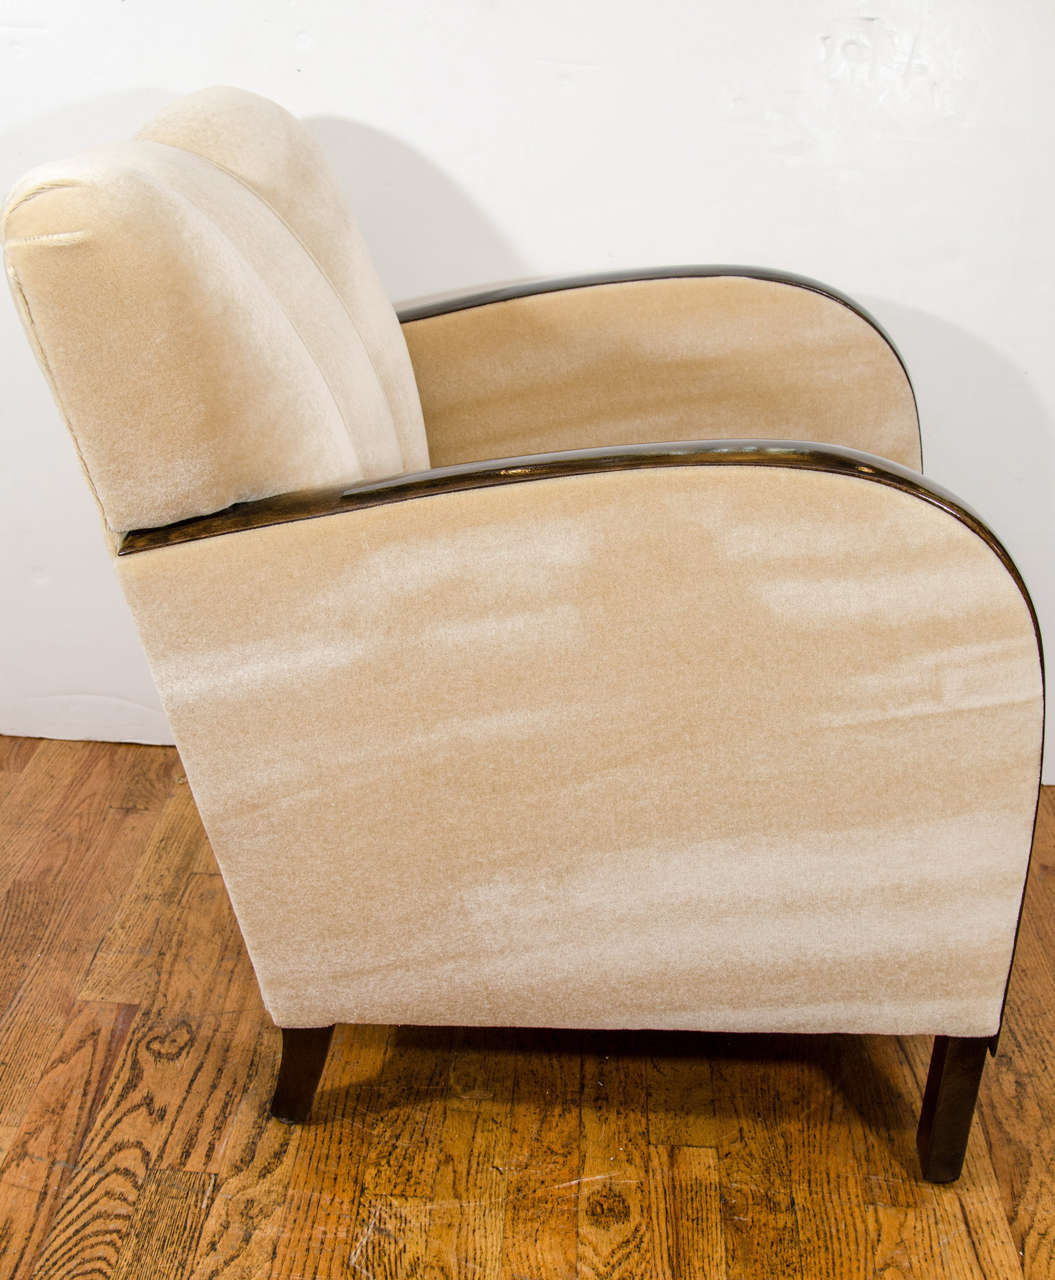 Mid-20th Century An Art Deco Club Chair